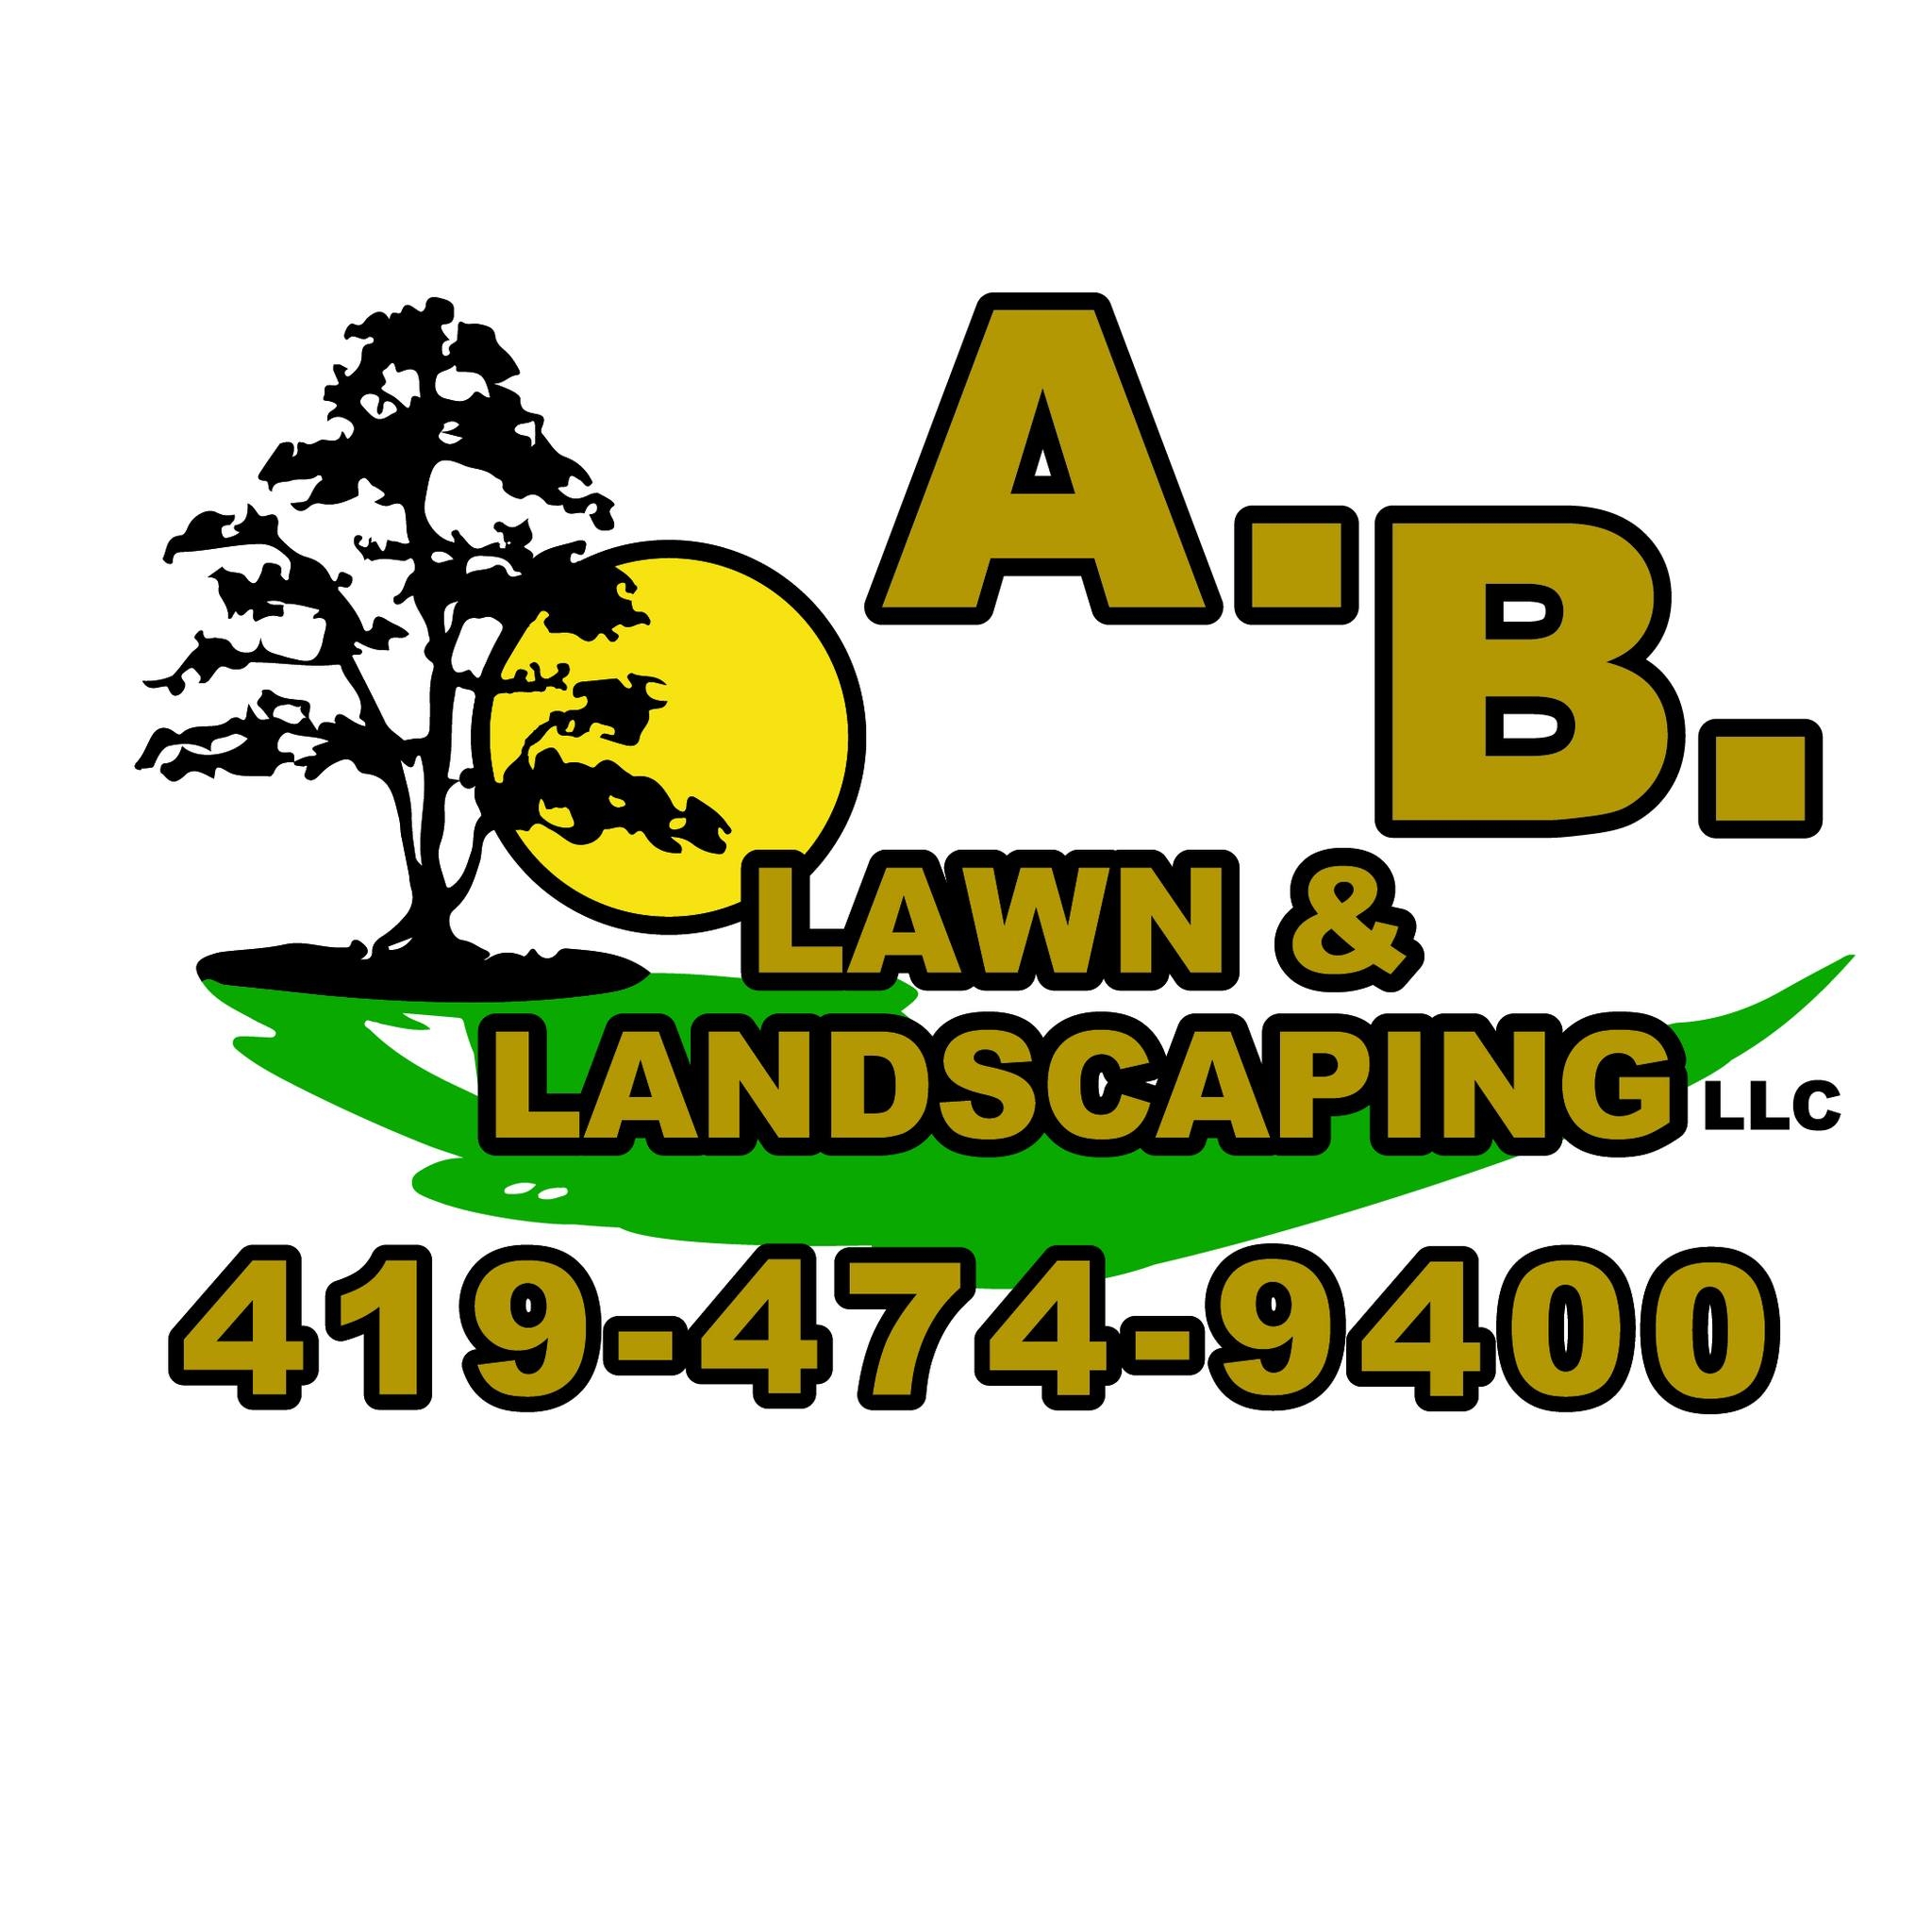 A.B. Lawn & Landscaping LLC